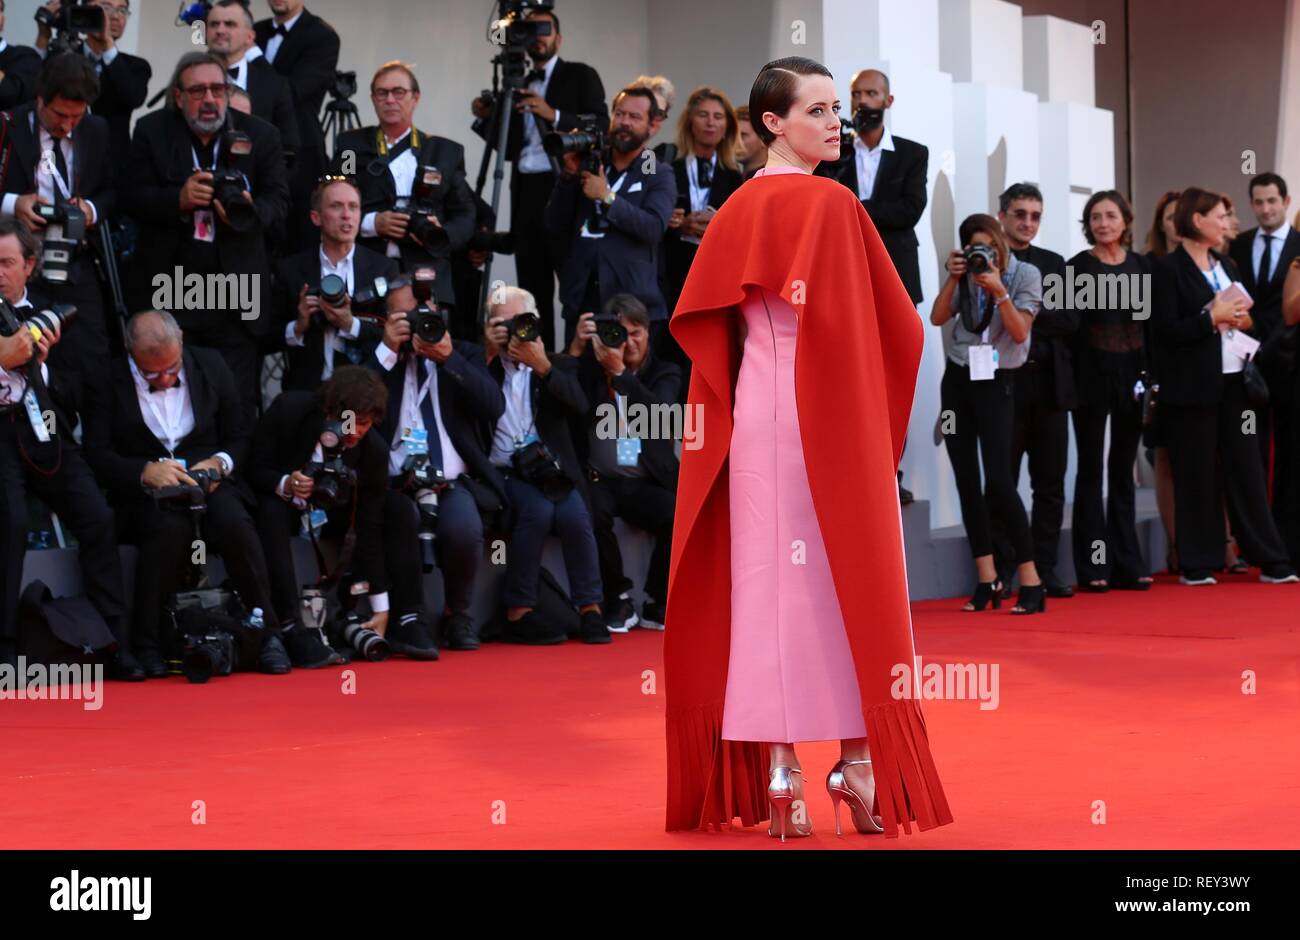 Venise, Italie - 29 août, 2018 : Claire Foy, marche le tapis rouge de l'avant du "premier homme" au Festival du Film de Venise (Ph : Mickael Chavet) Banque D'Images